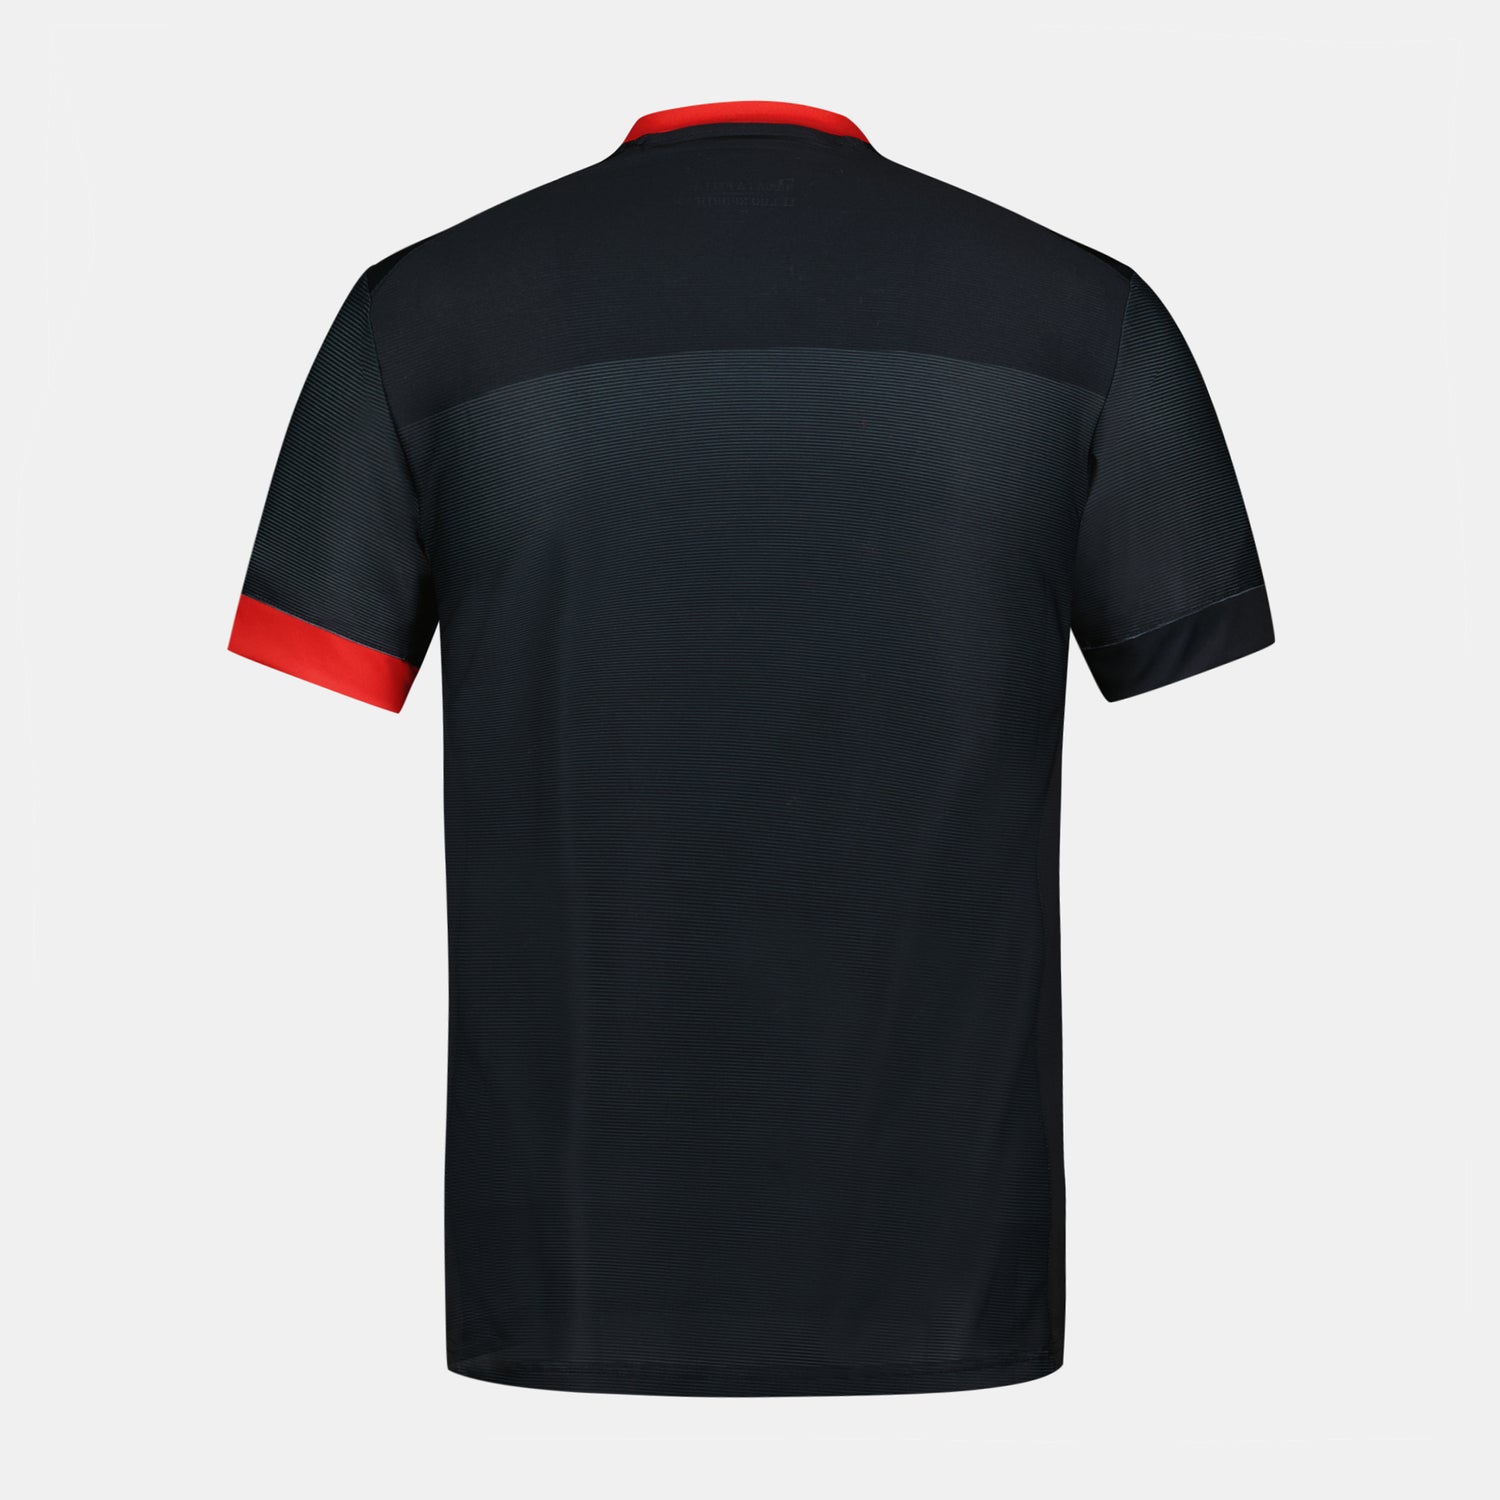 2320905-OGC NICE Maillot Pré Match 23 M black  | Camiseta Prématch 23/24 Hombre